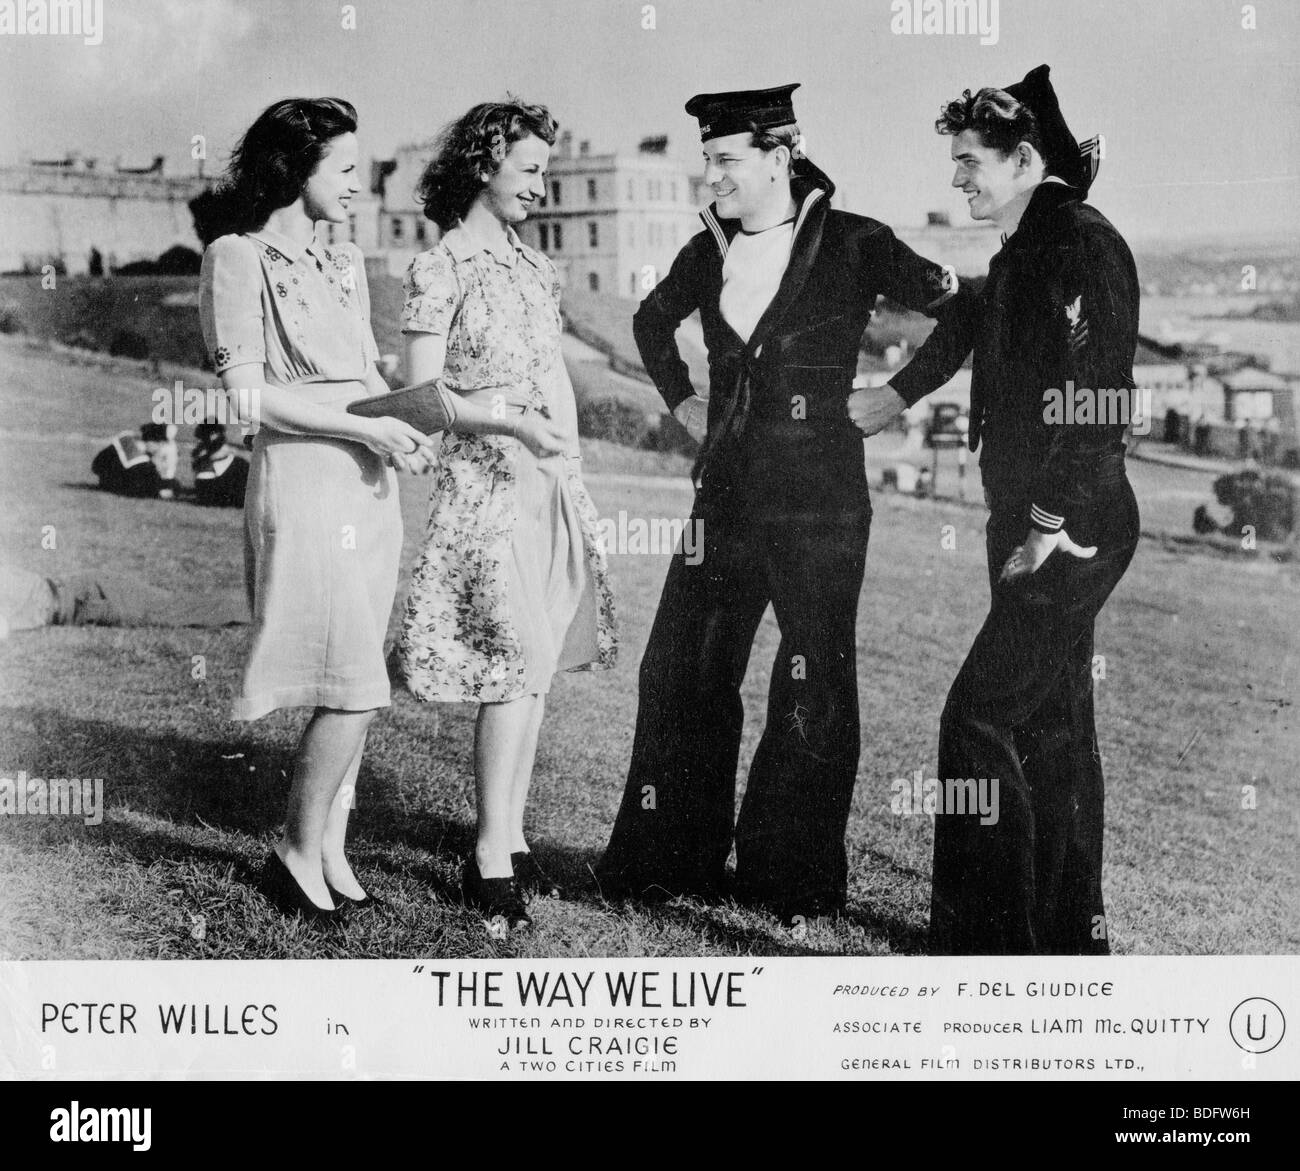 Il nostro modo di vivere 1946 due città film- un britannico e un marinaio americano incontra due ragazze inglesi Foto Stock